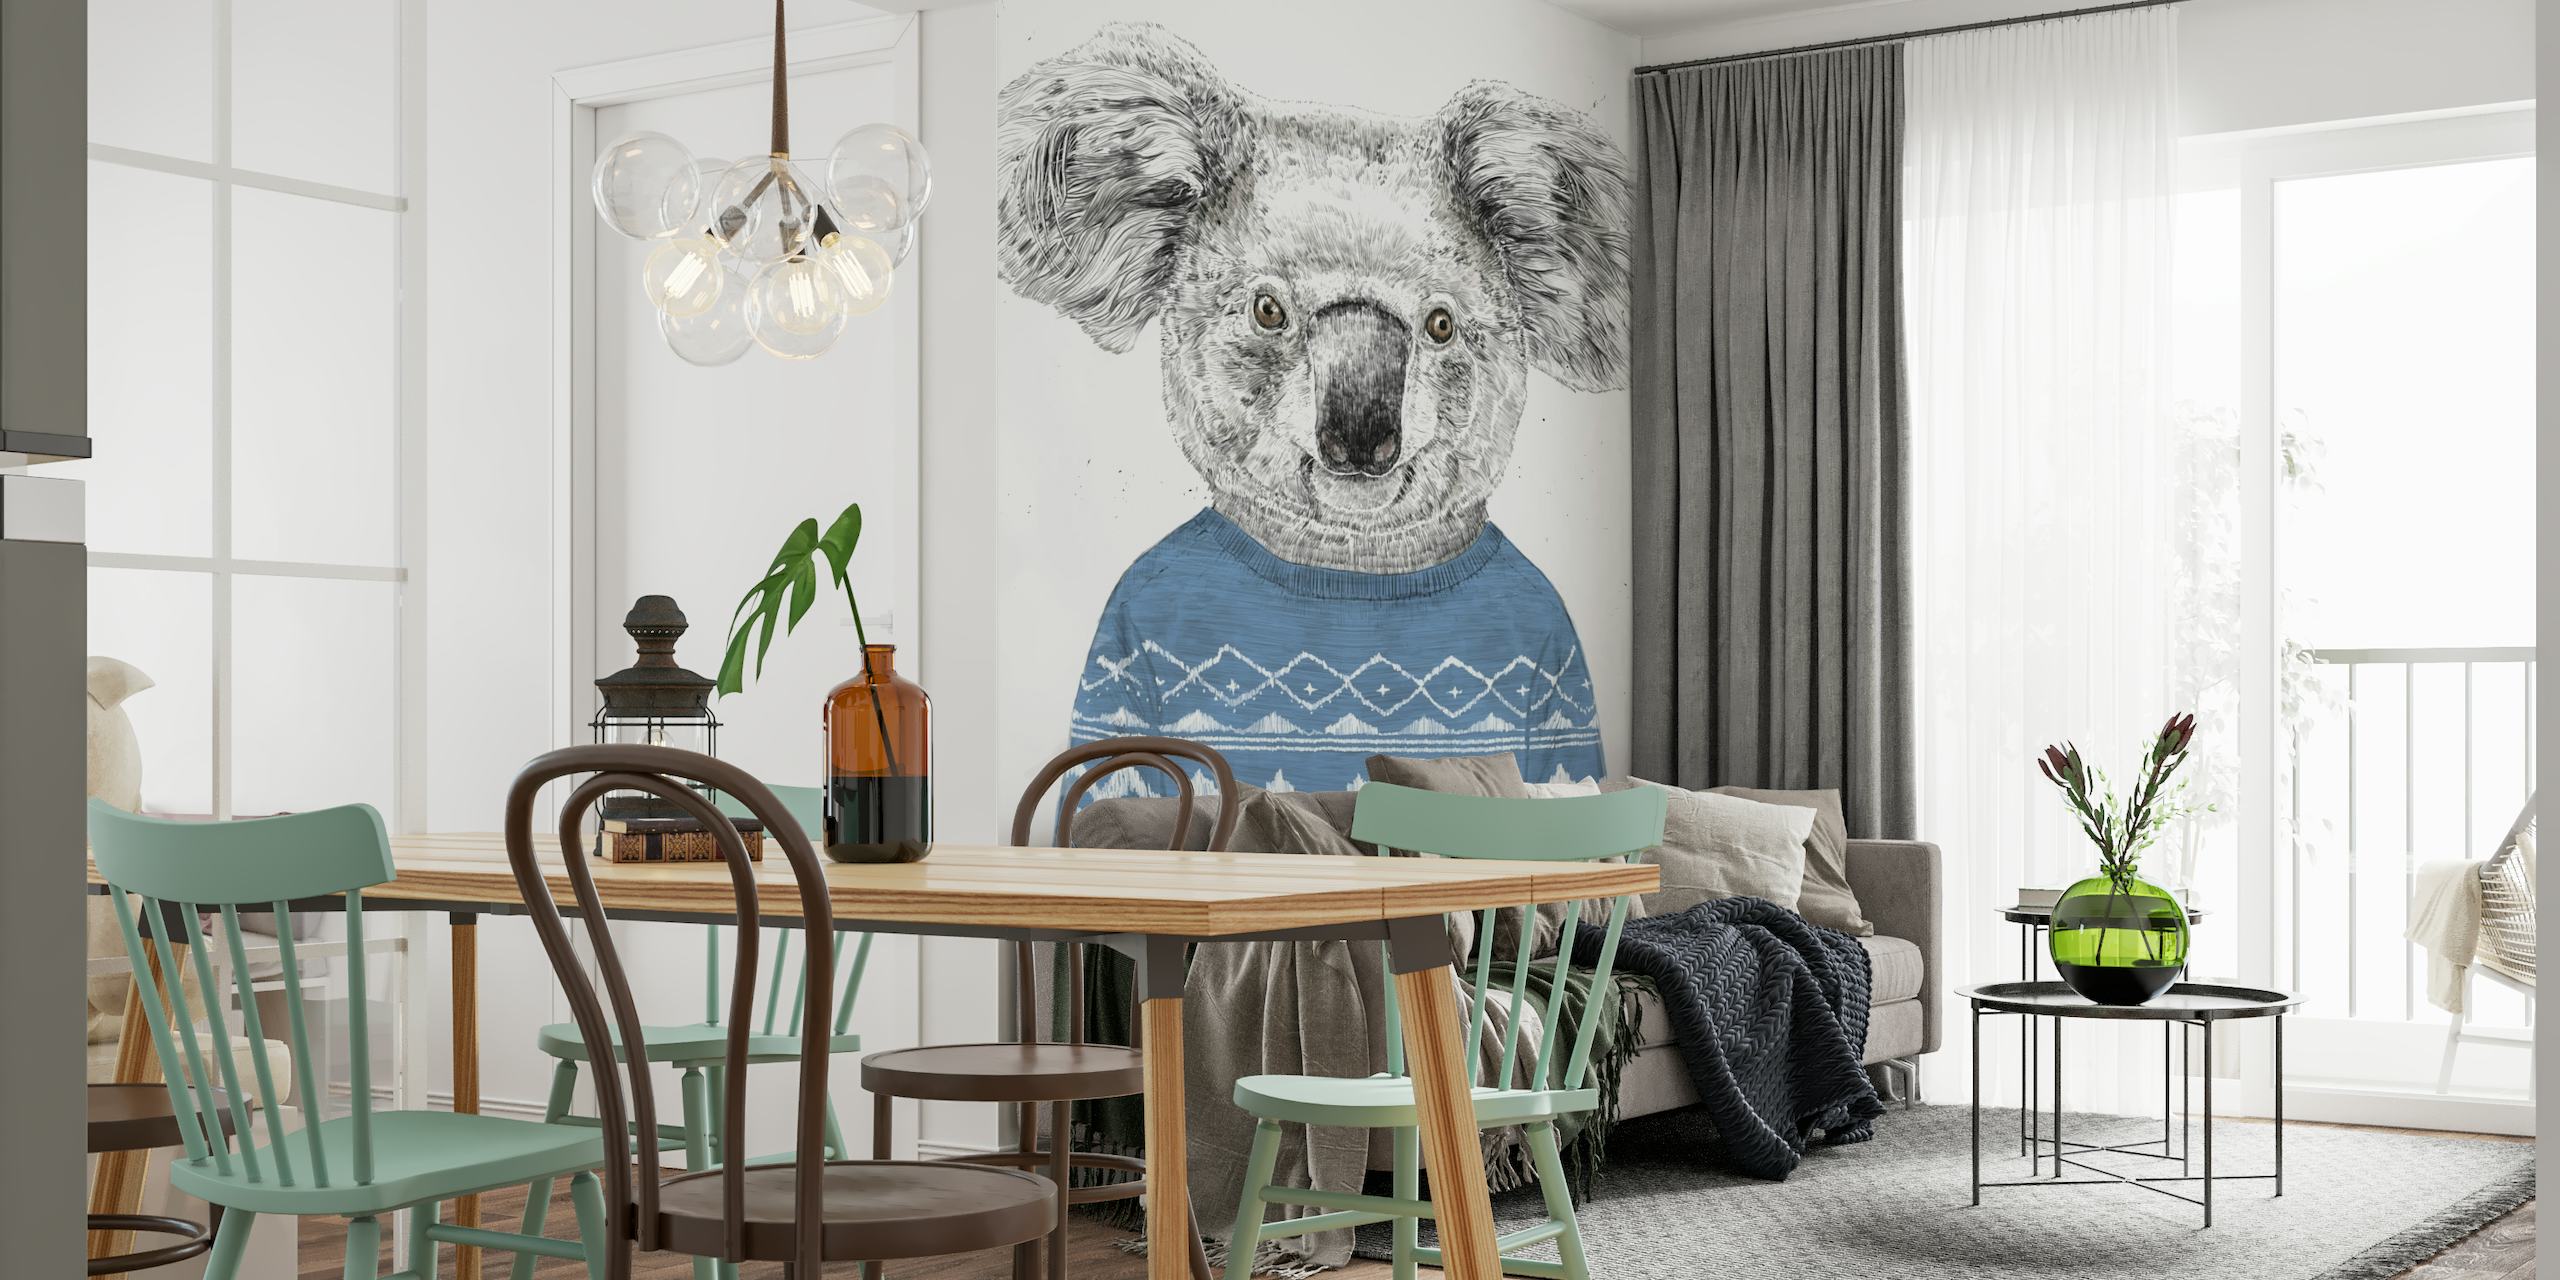 Winter koala wallpaper